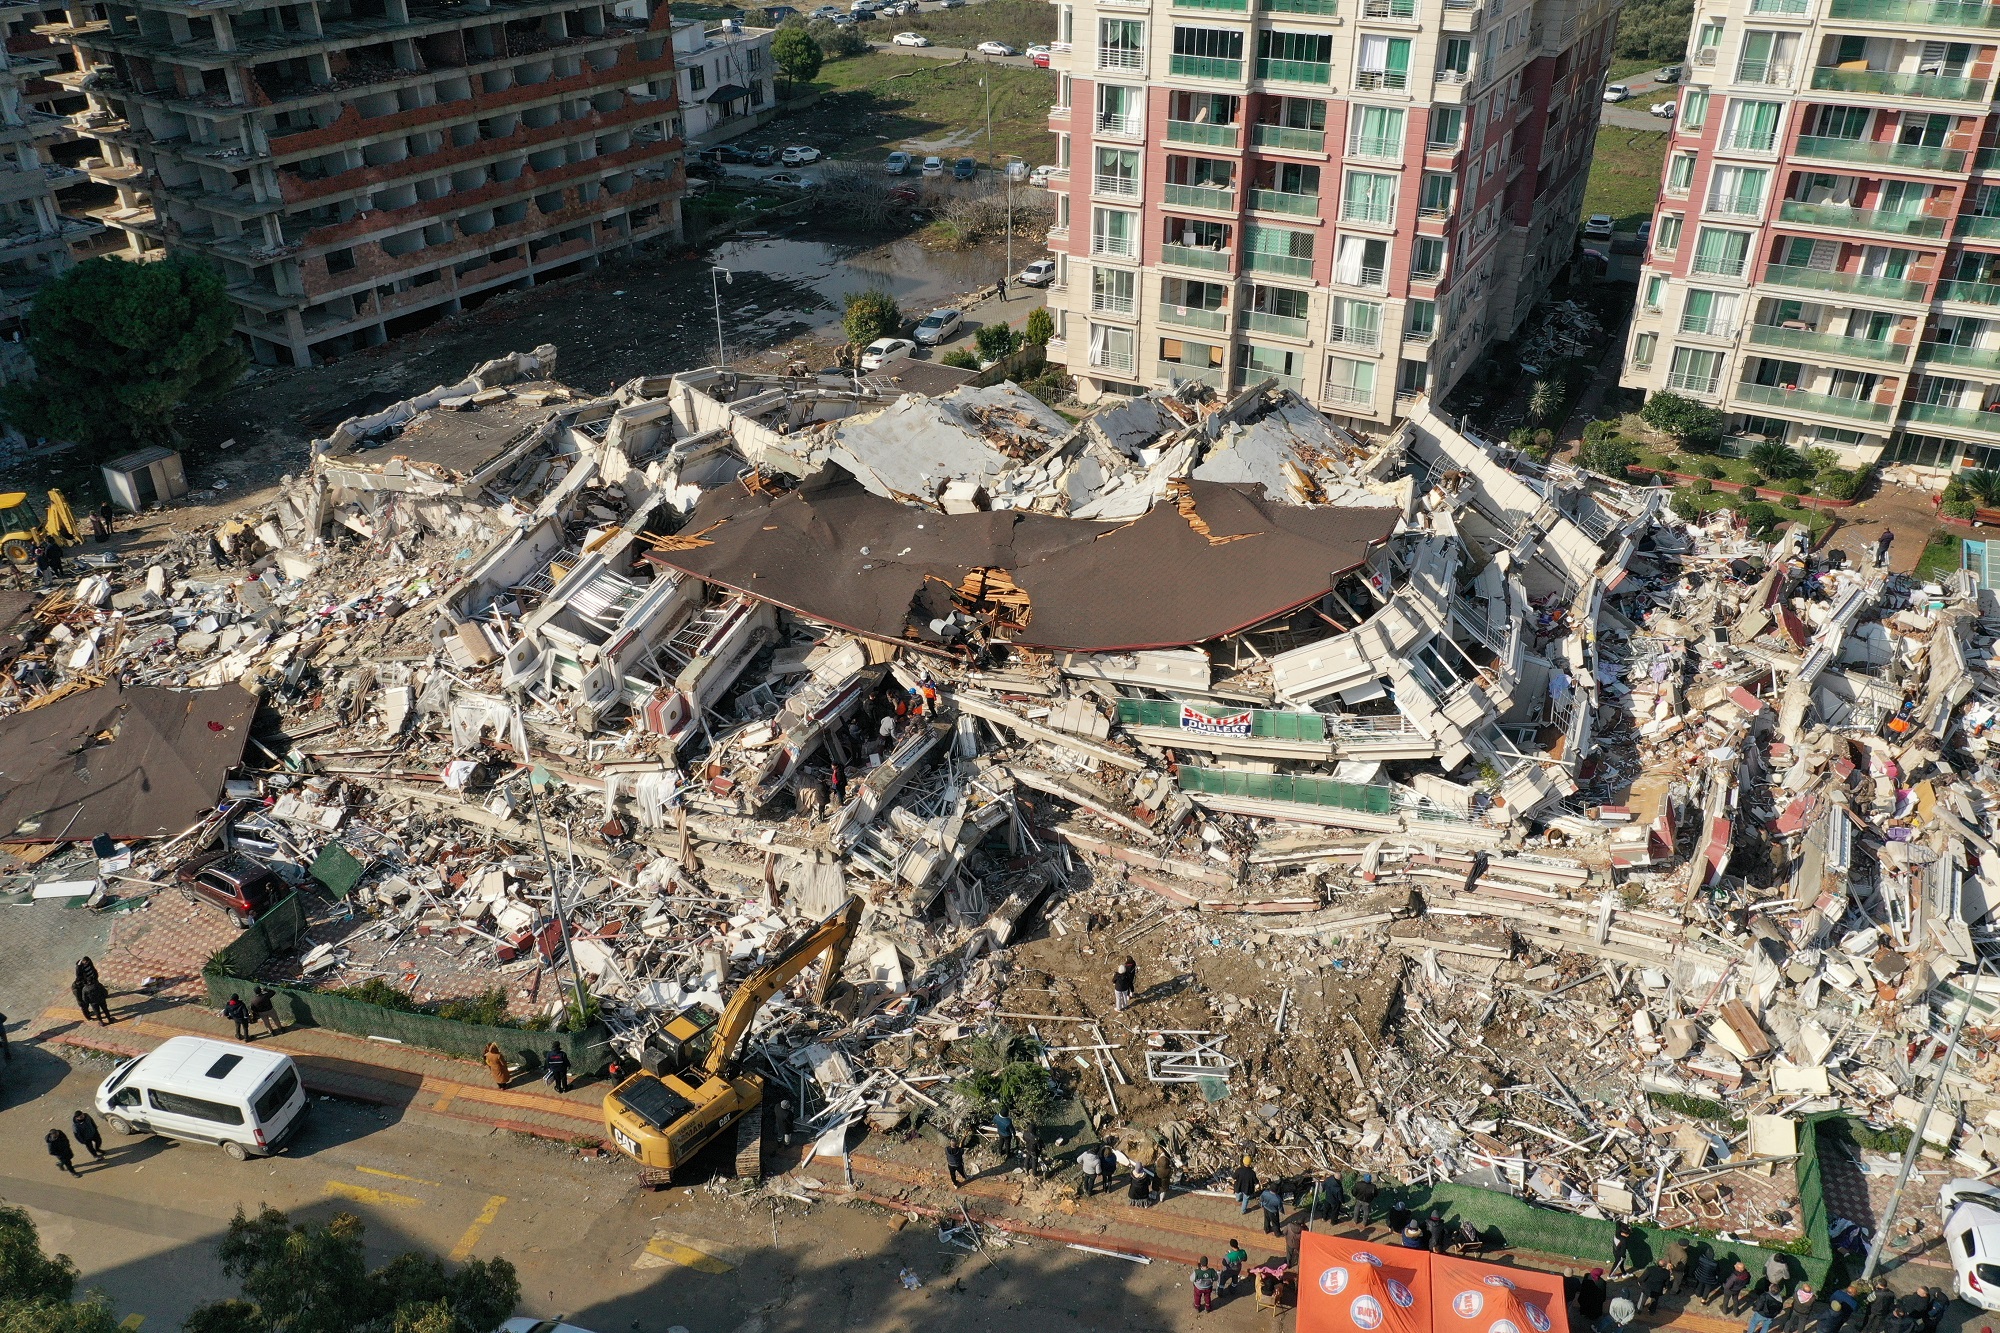  Điều gì xảy ra ở tỉnh của Thổ Nhĩ Kỳ bị động đất tàn phá nặng nhất? - Ảnh 1.